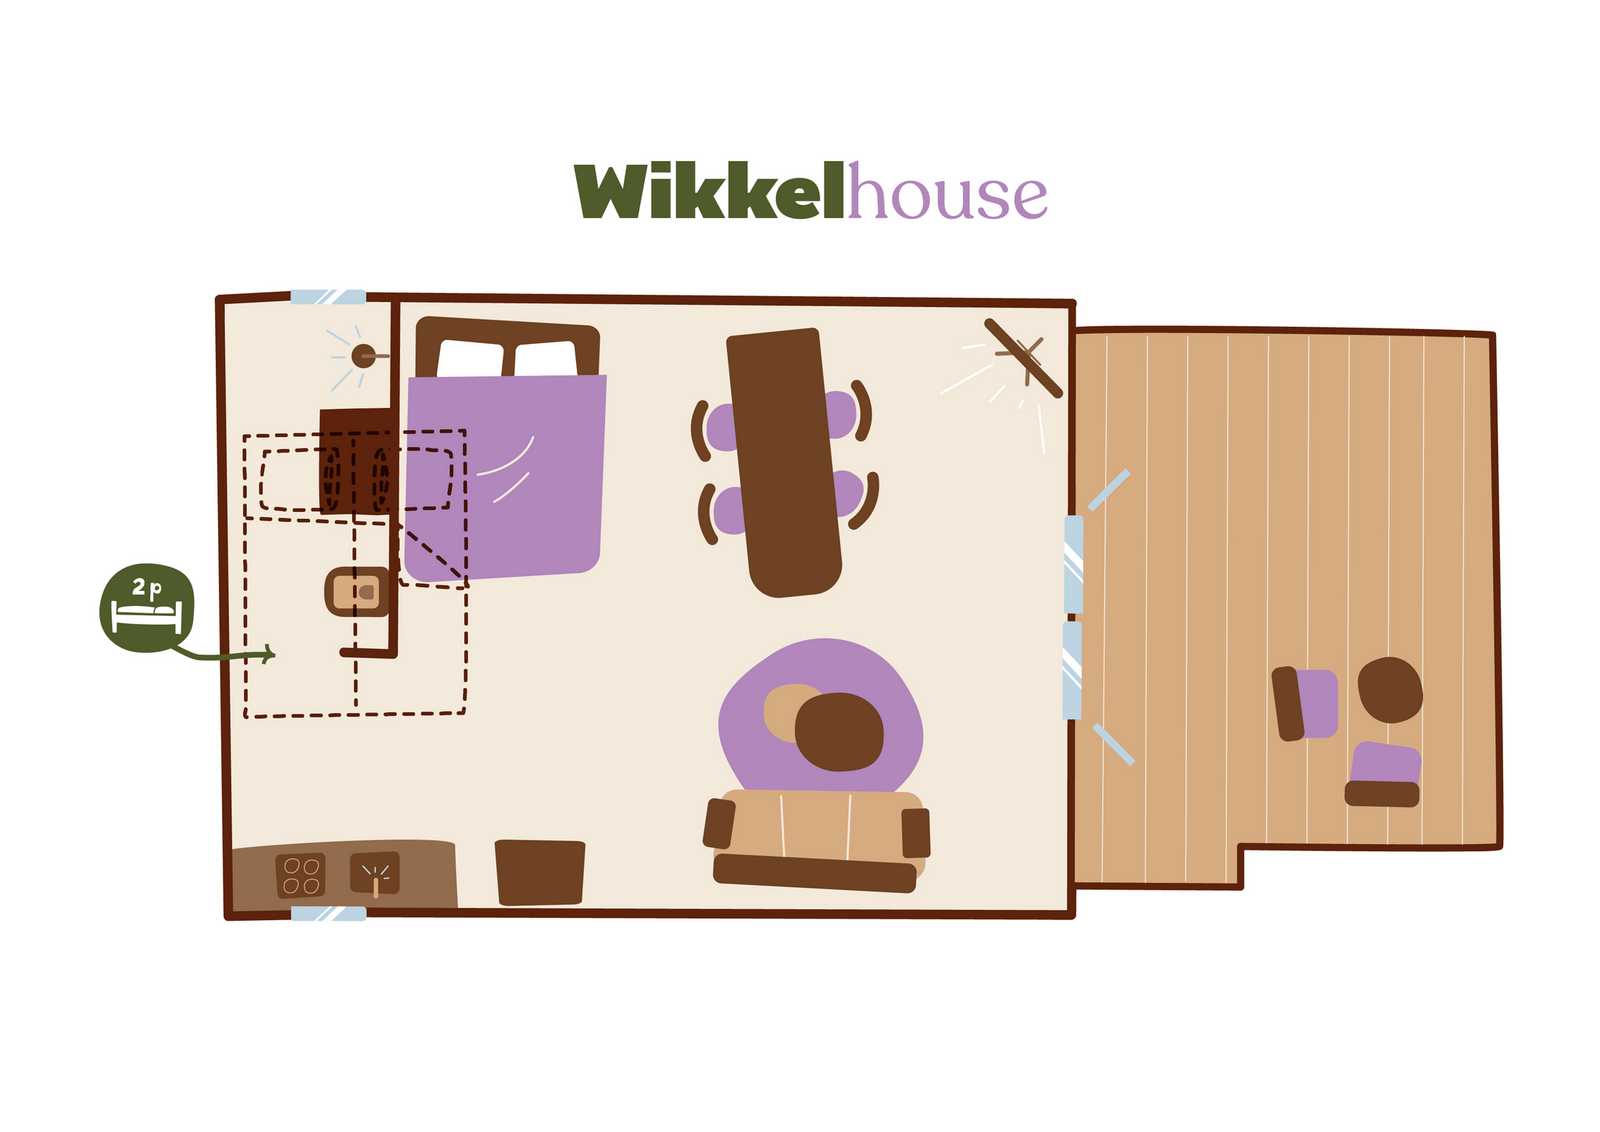 Wikkelhouse